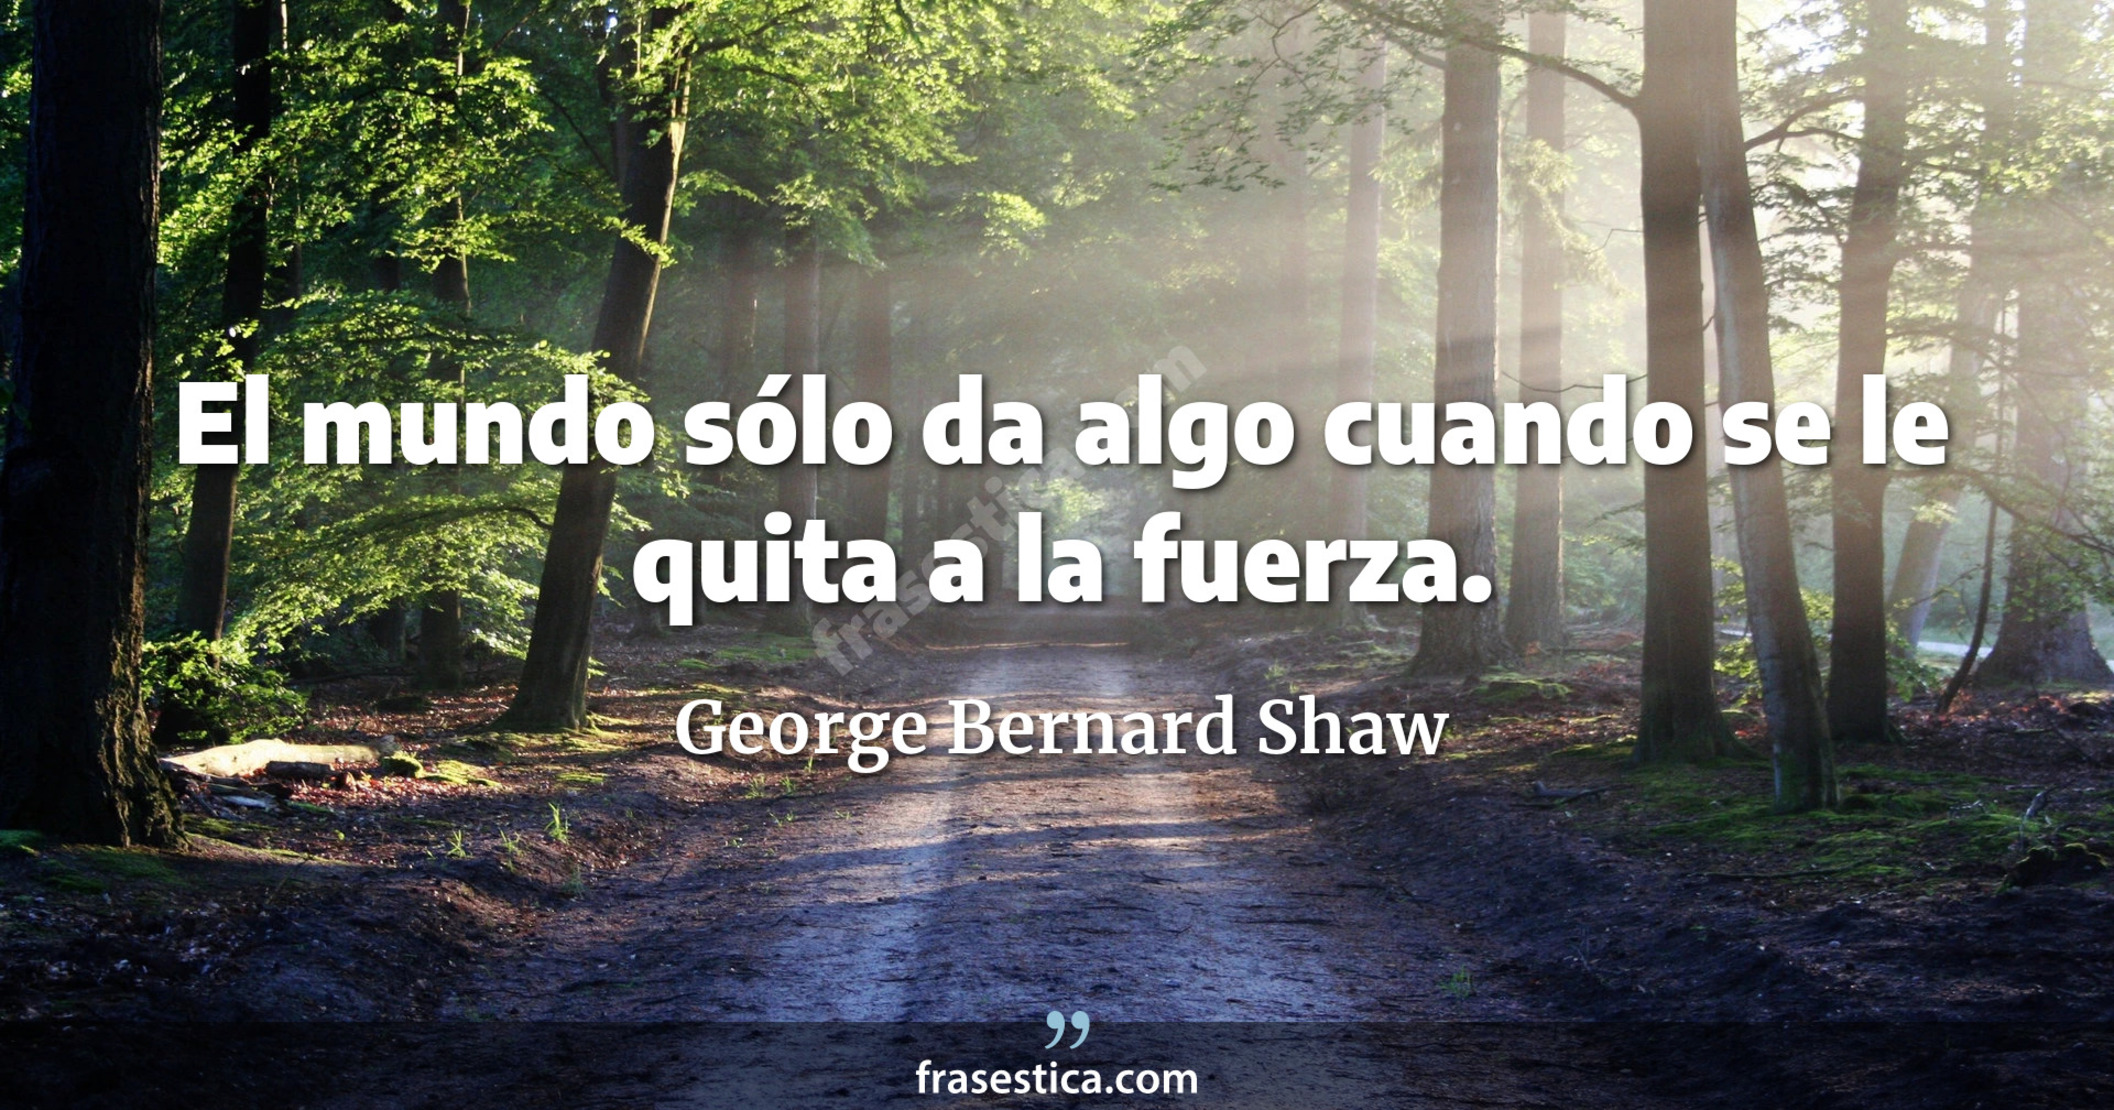 El mundo sólo da algo cuando se le quita a la fuerza. - George Bernard Shaw